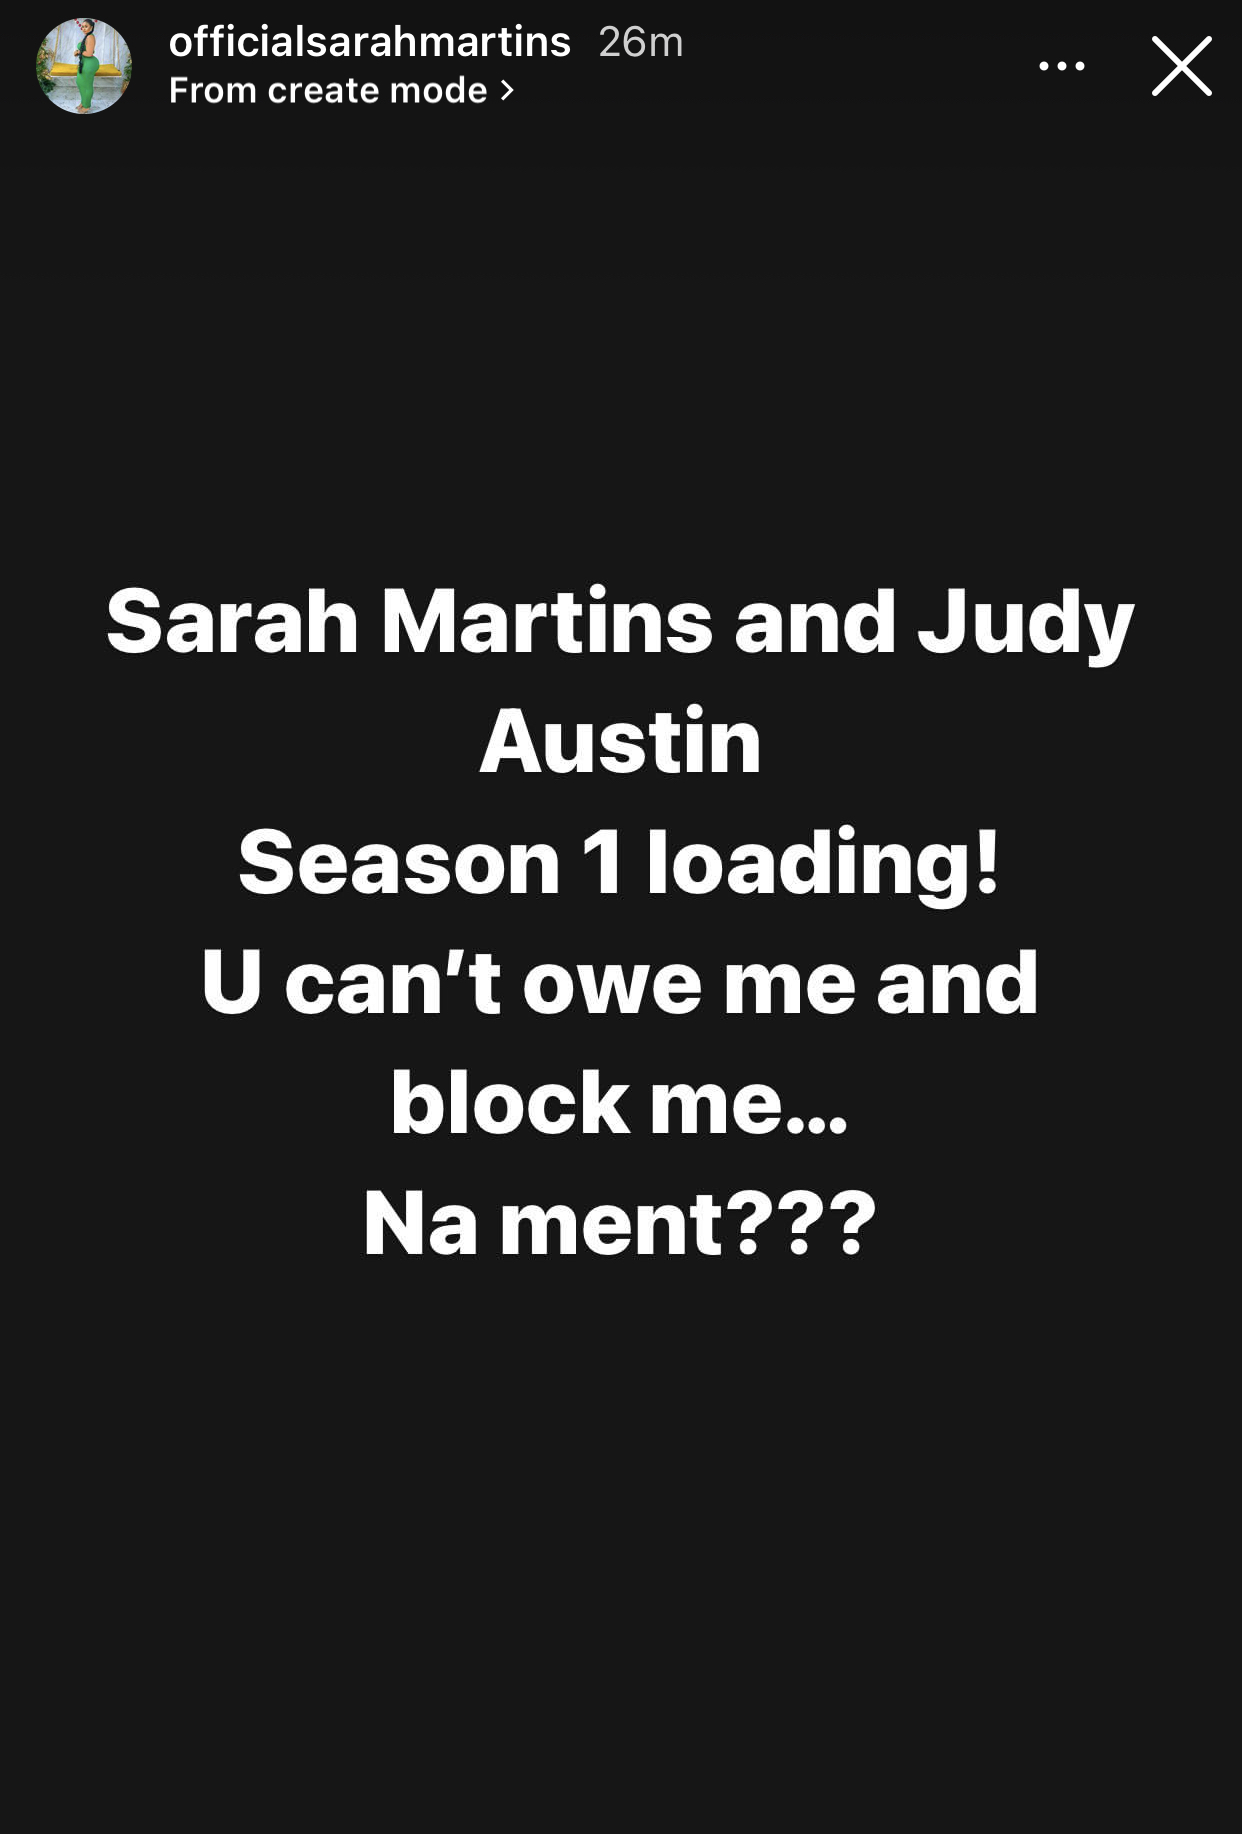 Pay me my N1m. You can?t owe me and then block me - Sarah Martins tells her former bestie, Judy Austin